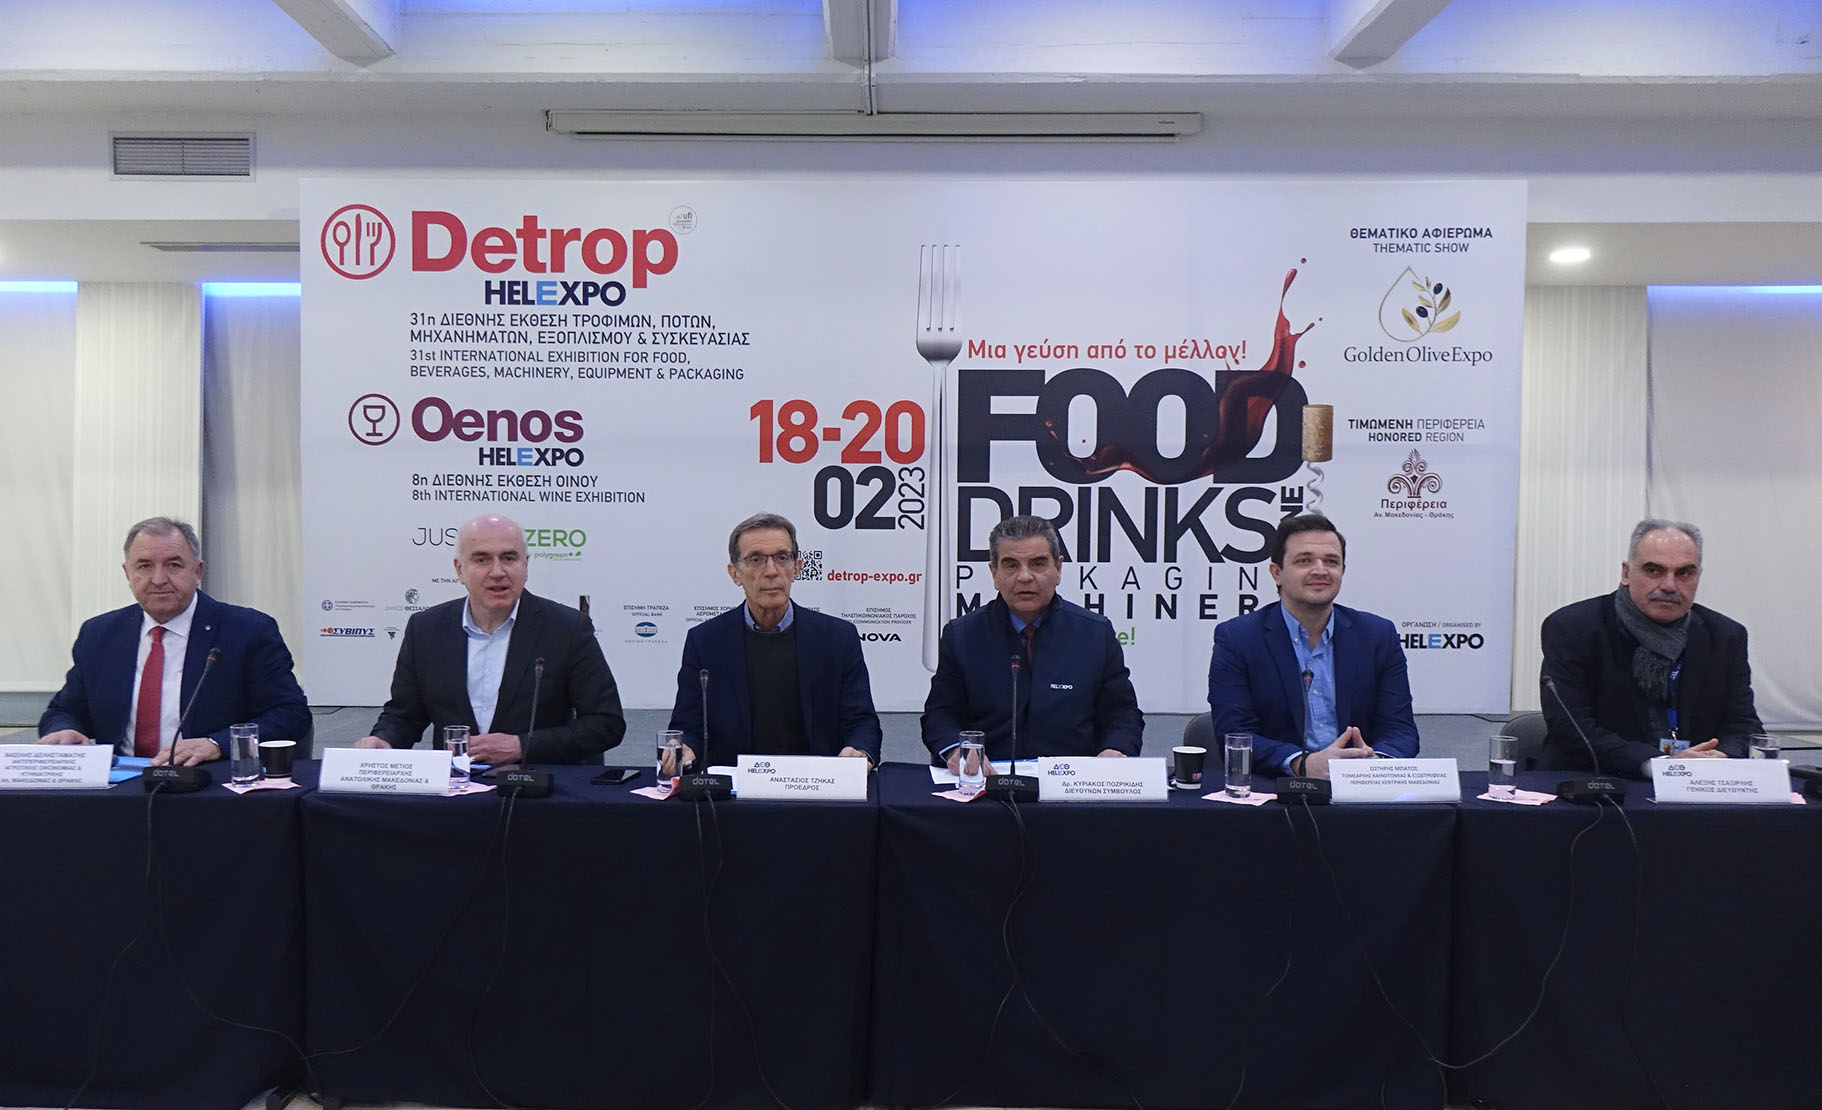 Τιμώμενη Περιφέρεια η Ανατολική Μακεδονία και Θράκη στις φετινές Εκθέσεις Τροφίμων και Ποτών Detrop & Oenos στη Θεσσαλονίκη